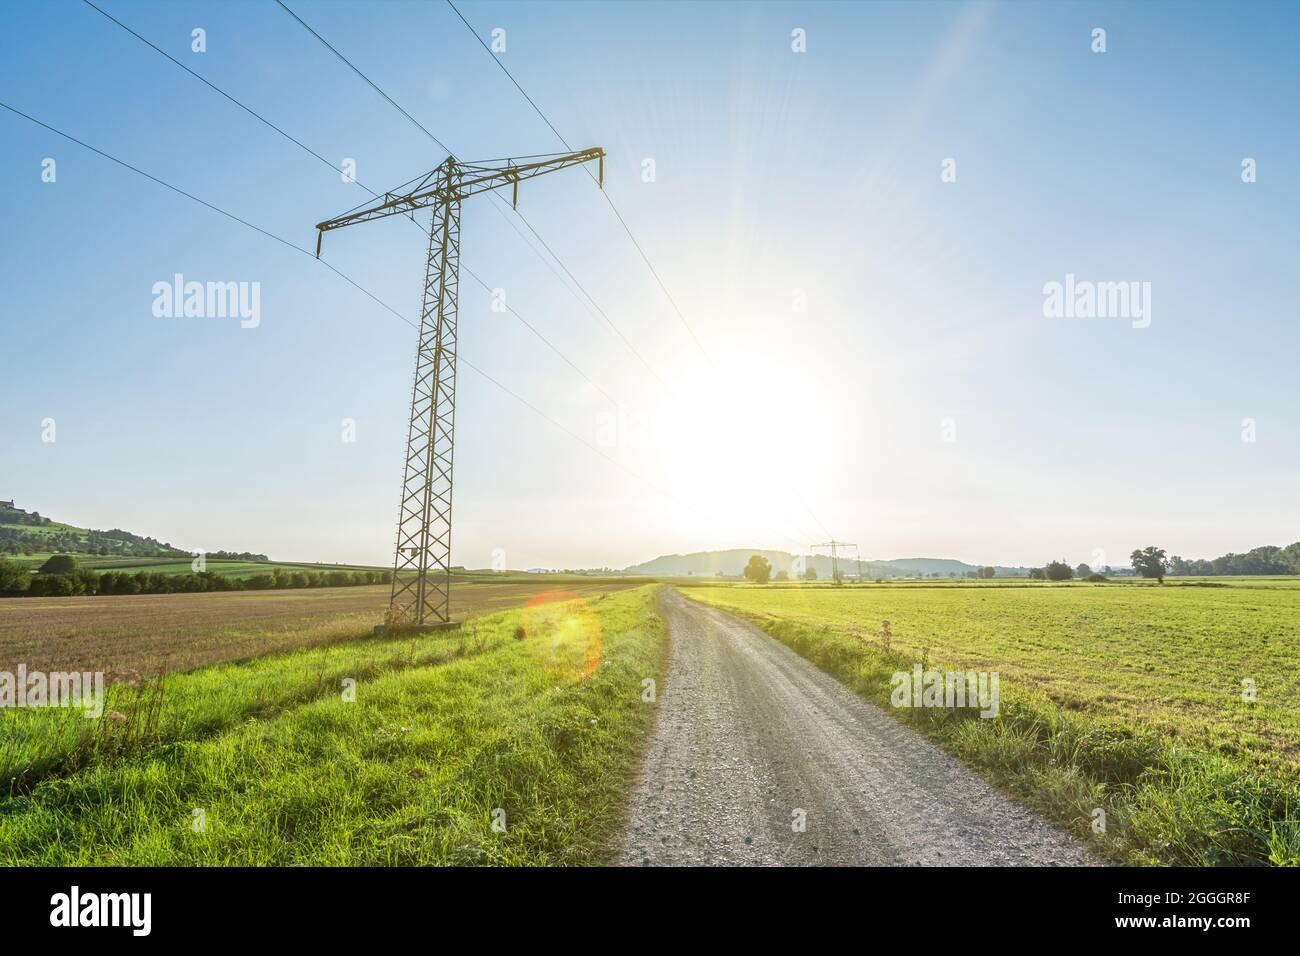 Stromleitung in ländlicher Landschaft mit landschaftlich reizvollen Sonnenstrahlen und Streulicht, die grüne, erneuerbare Energie symbolisieren Stockfoto